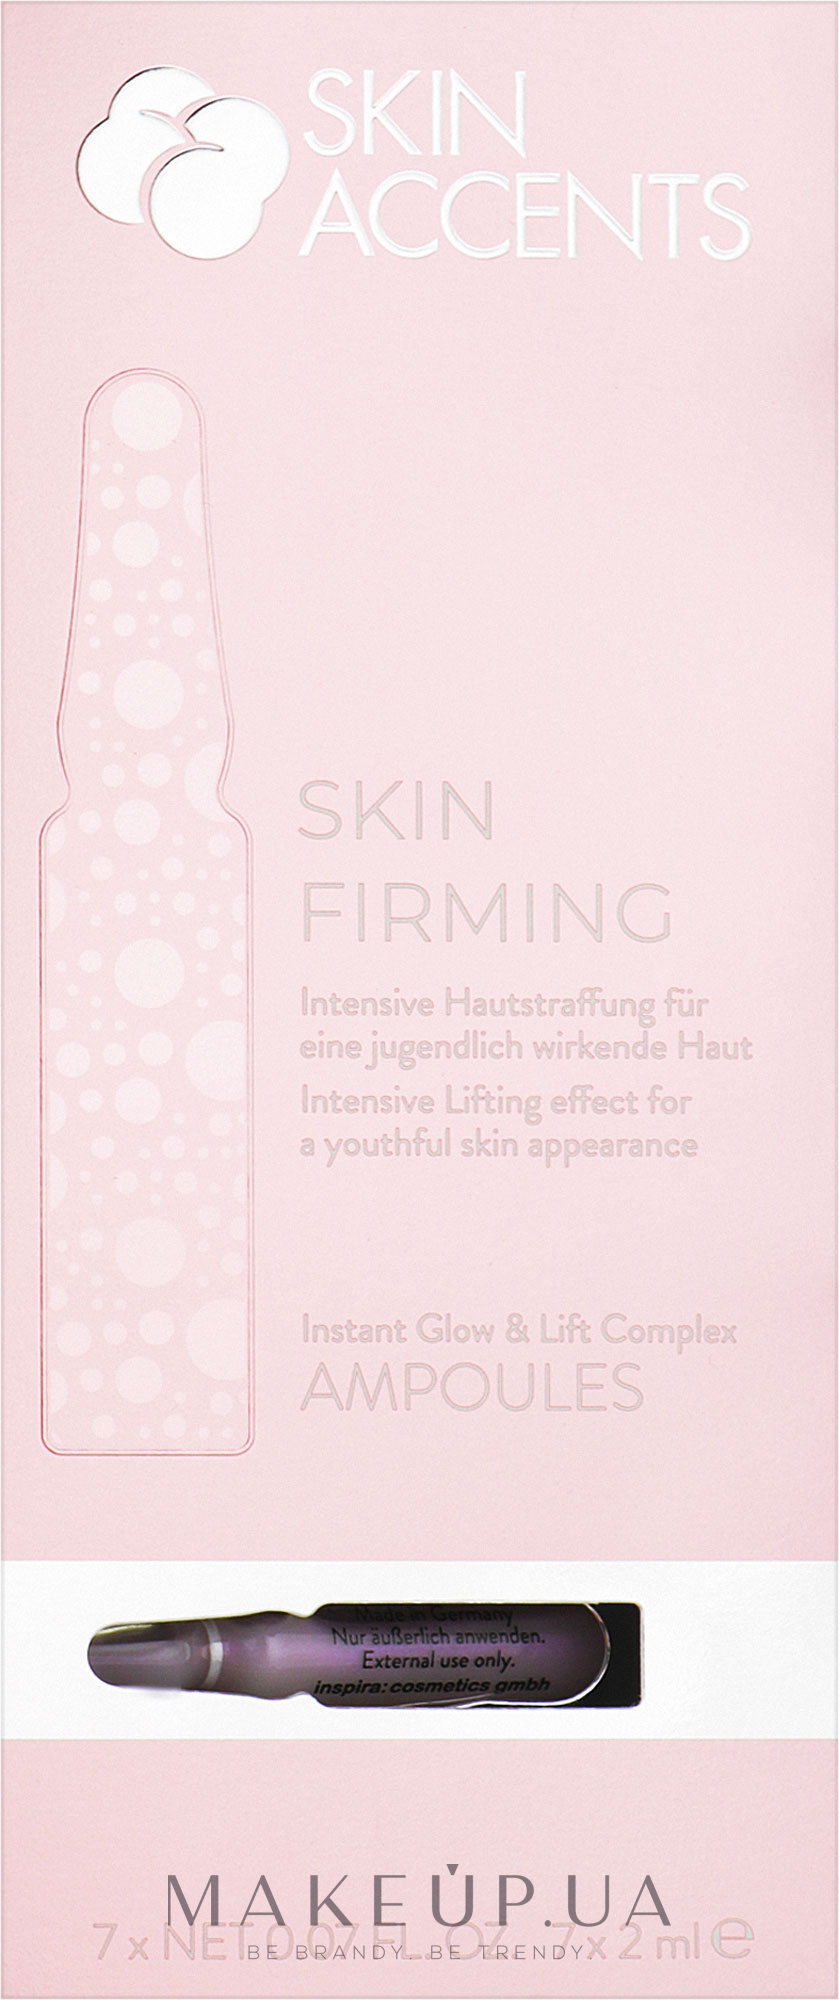 Миттєве сяйво та ліфтинг шкіри концентрат - Inspira:cosmetics Skin Accents Instant Glow & Lift Complex — фото 7x2ml